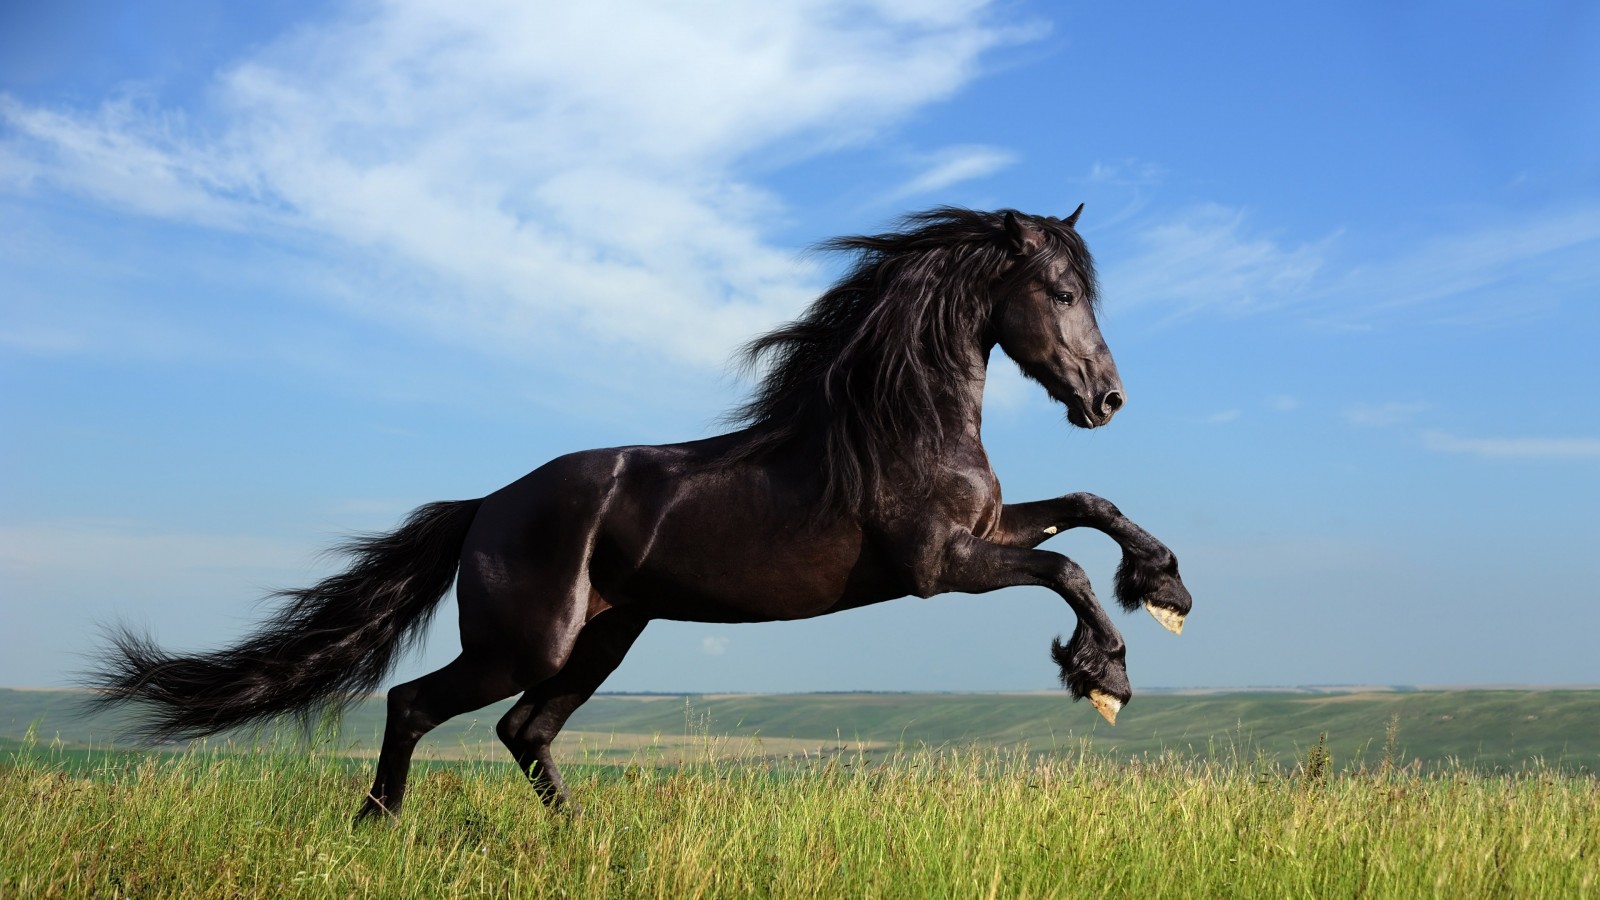 Black Horse Running Wallpaper for Desktop 1600x900